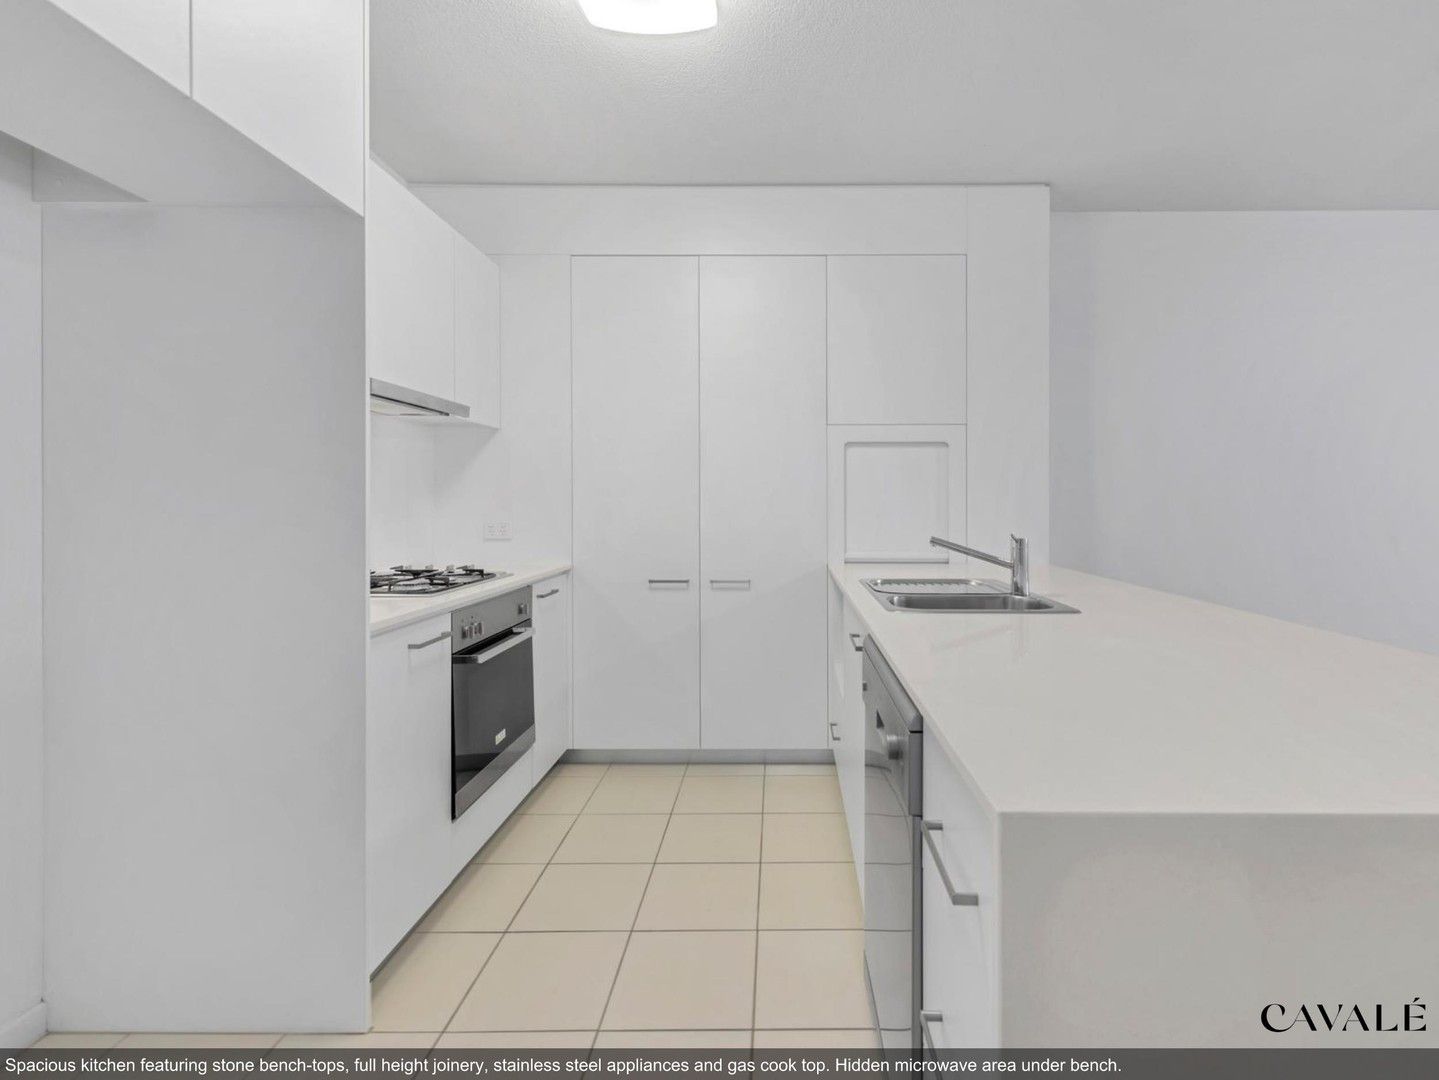 2 bedrooms Apartment / Unit / Flat in 407/53 Wyandra Street TENERIFFE QLD, 4005